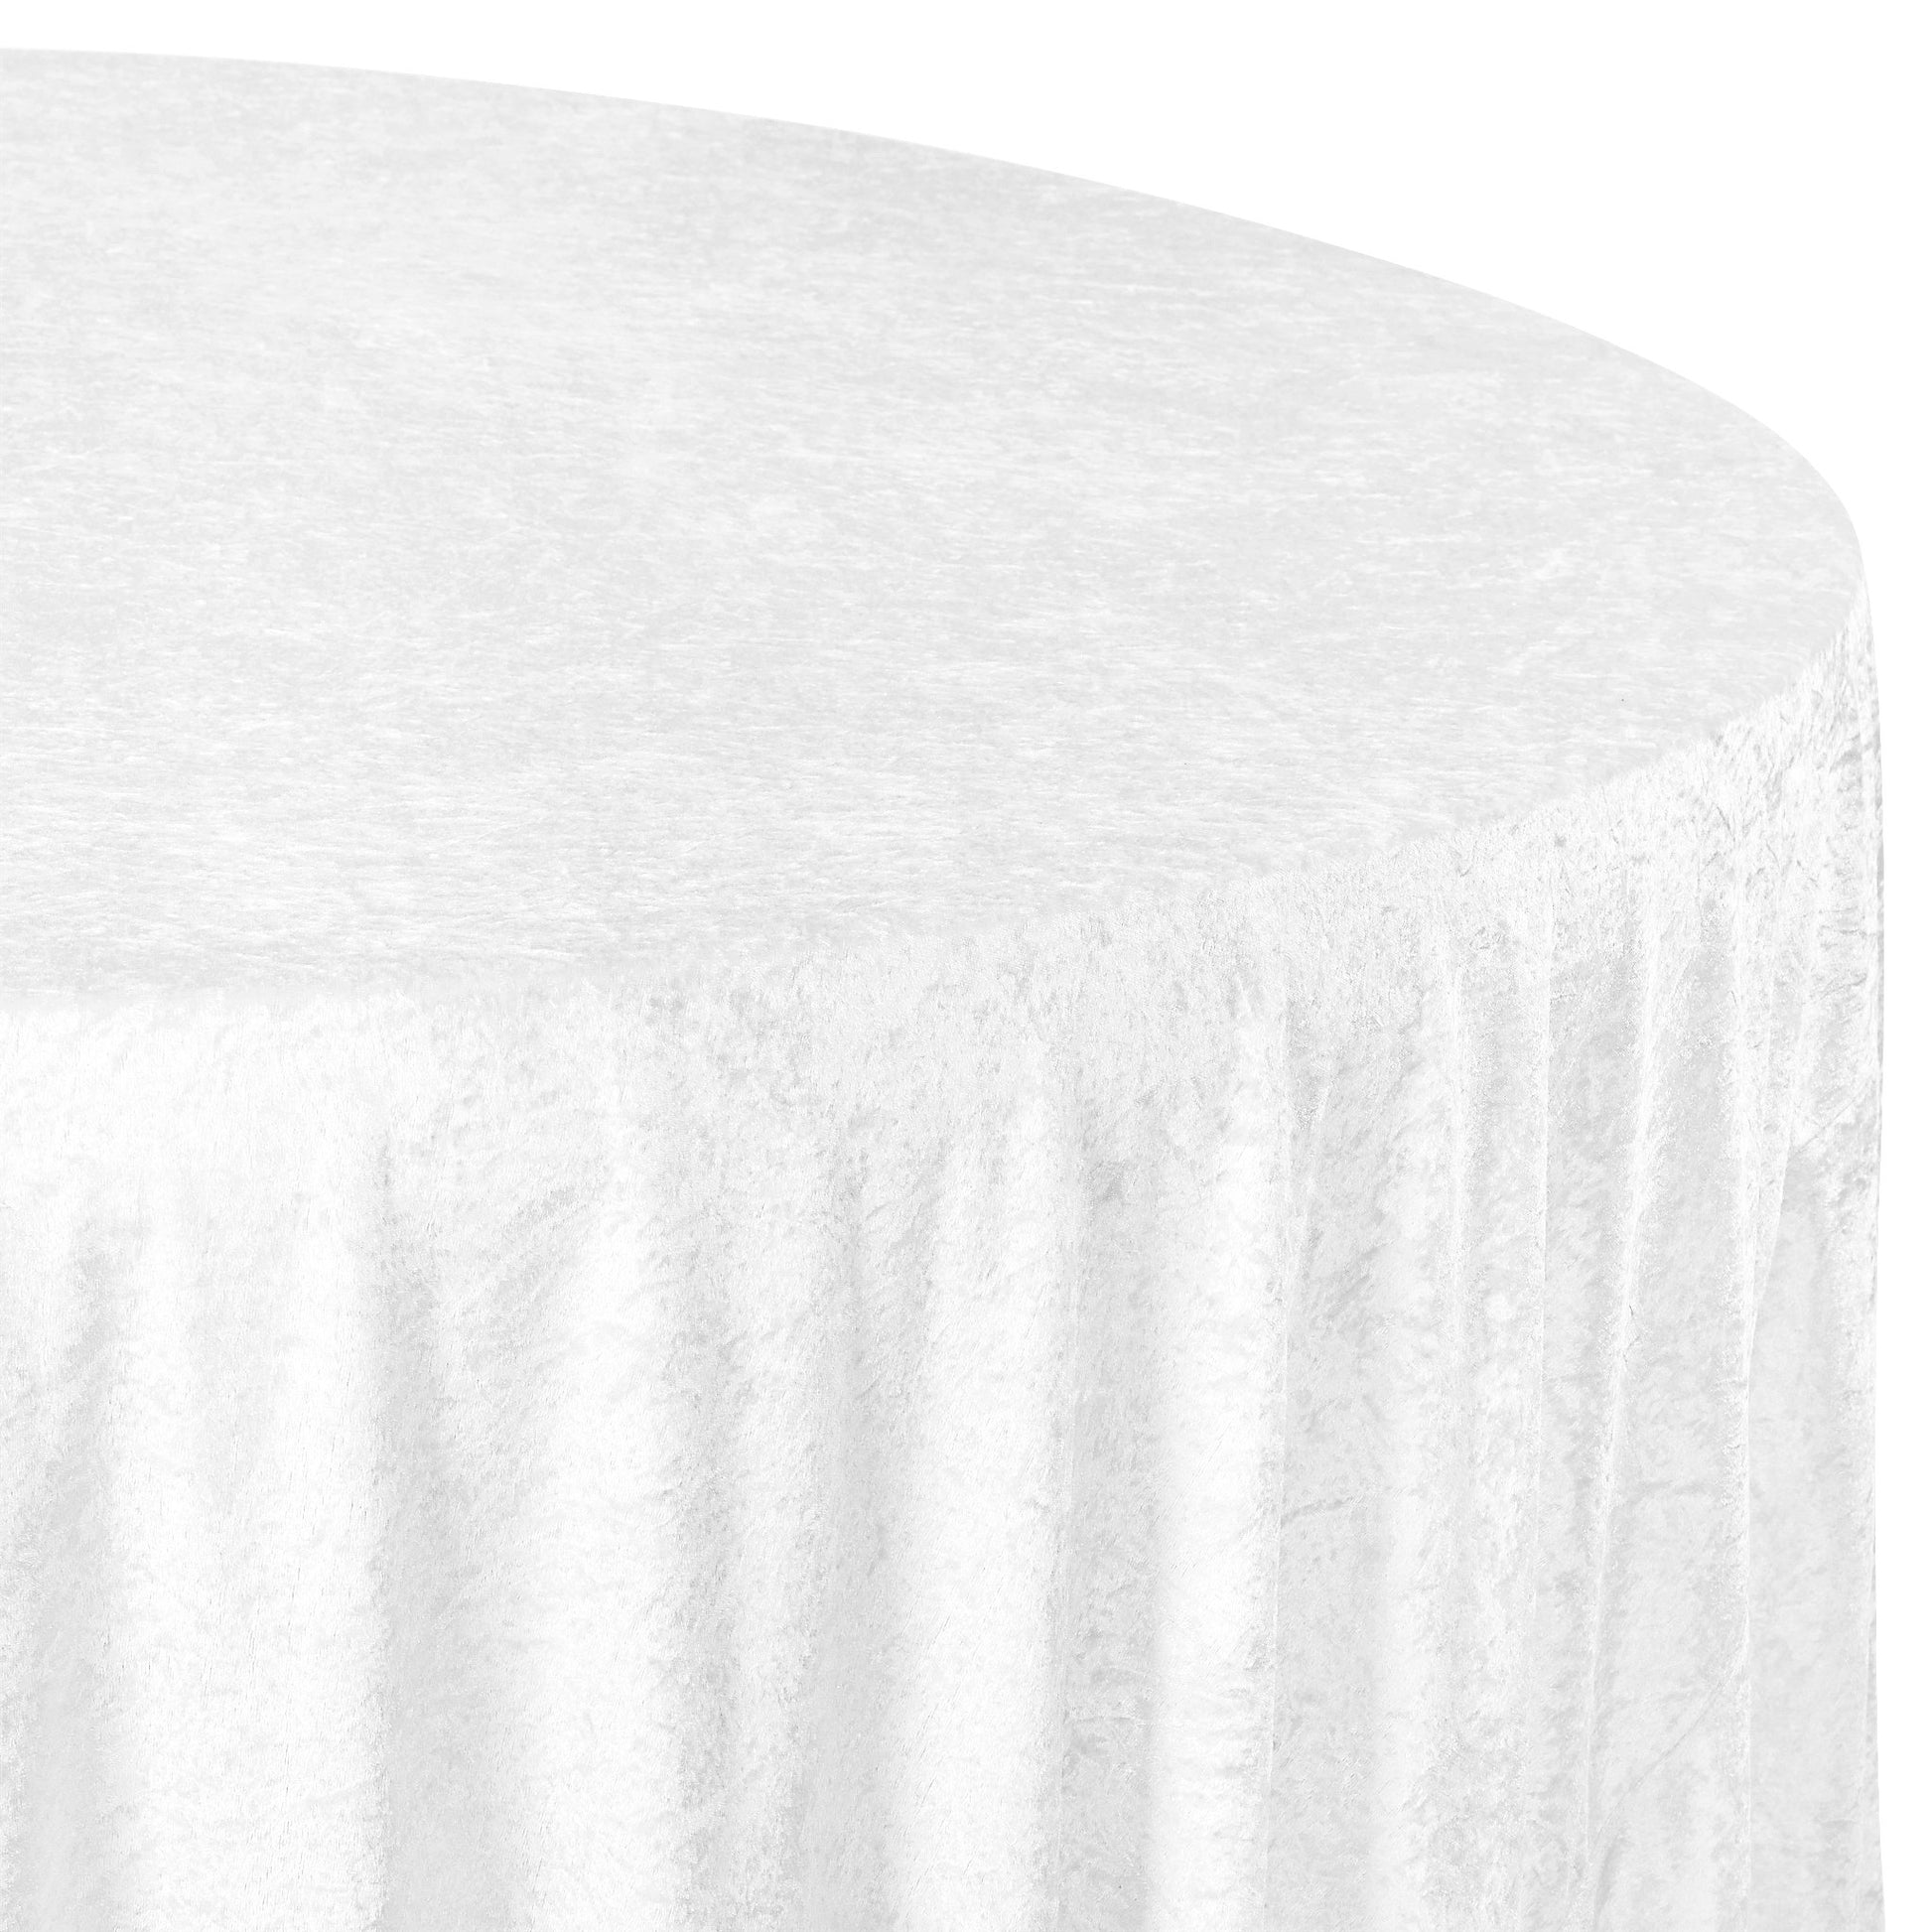 Velvet 120" Round Tablecloth - White - CV Linens